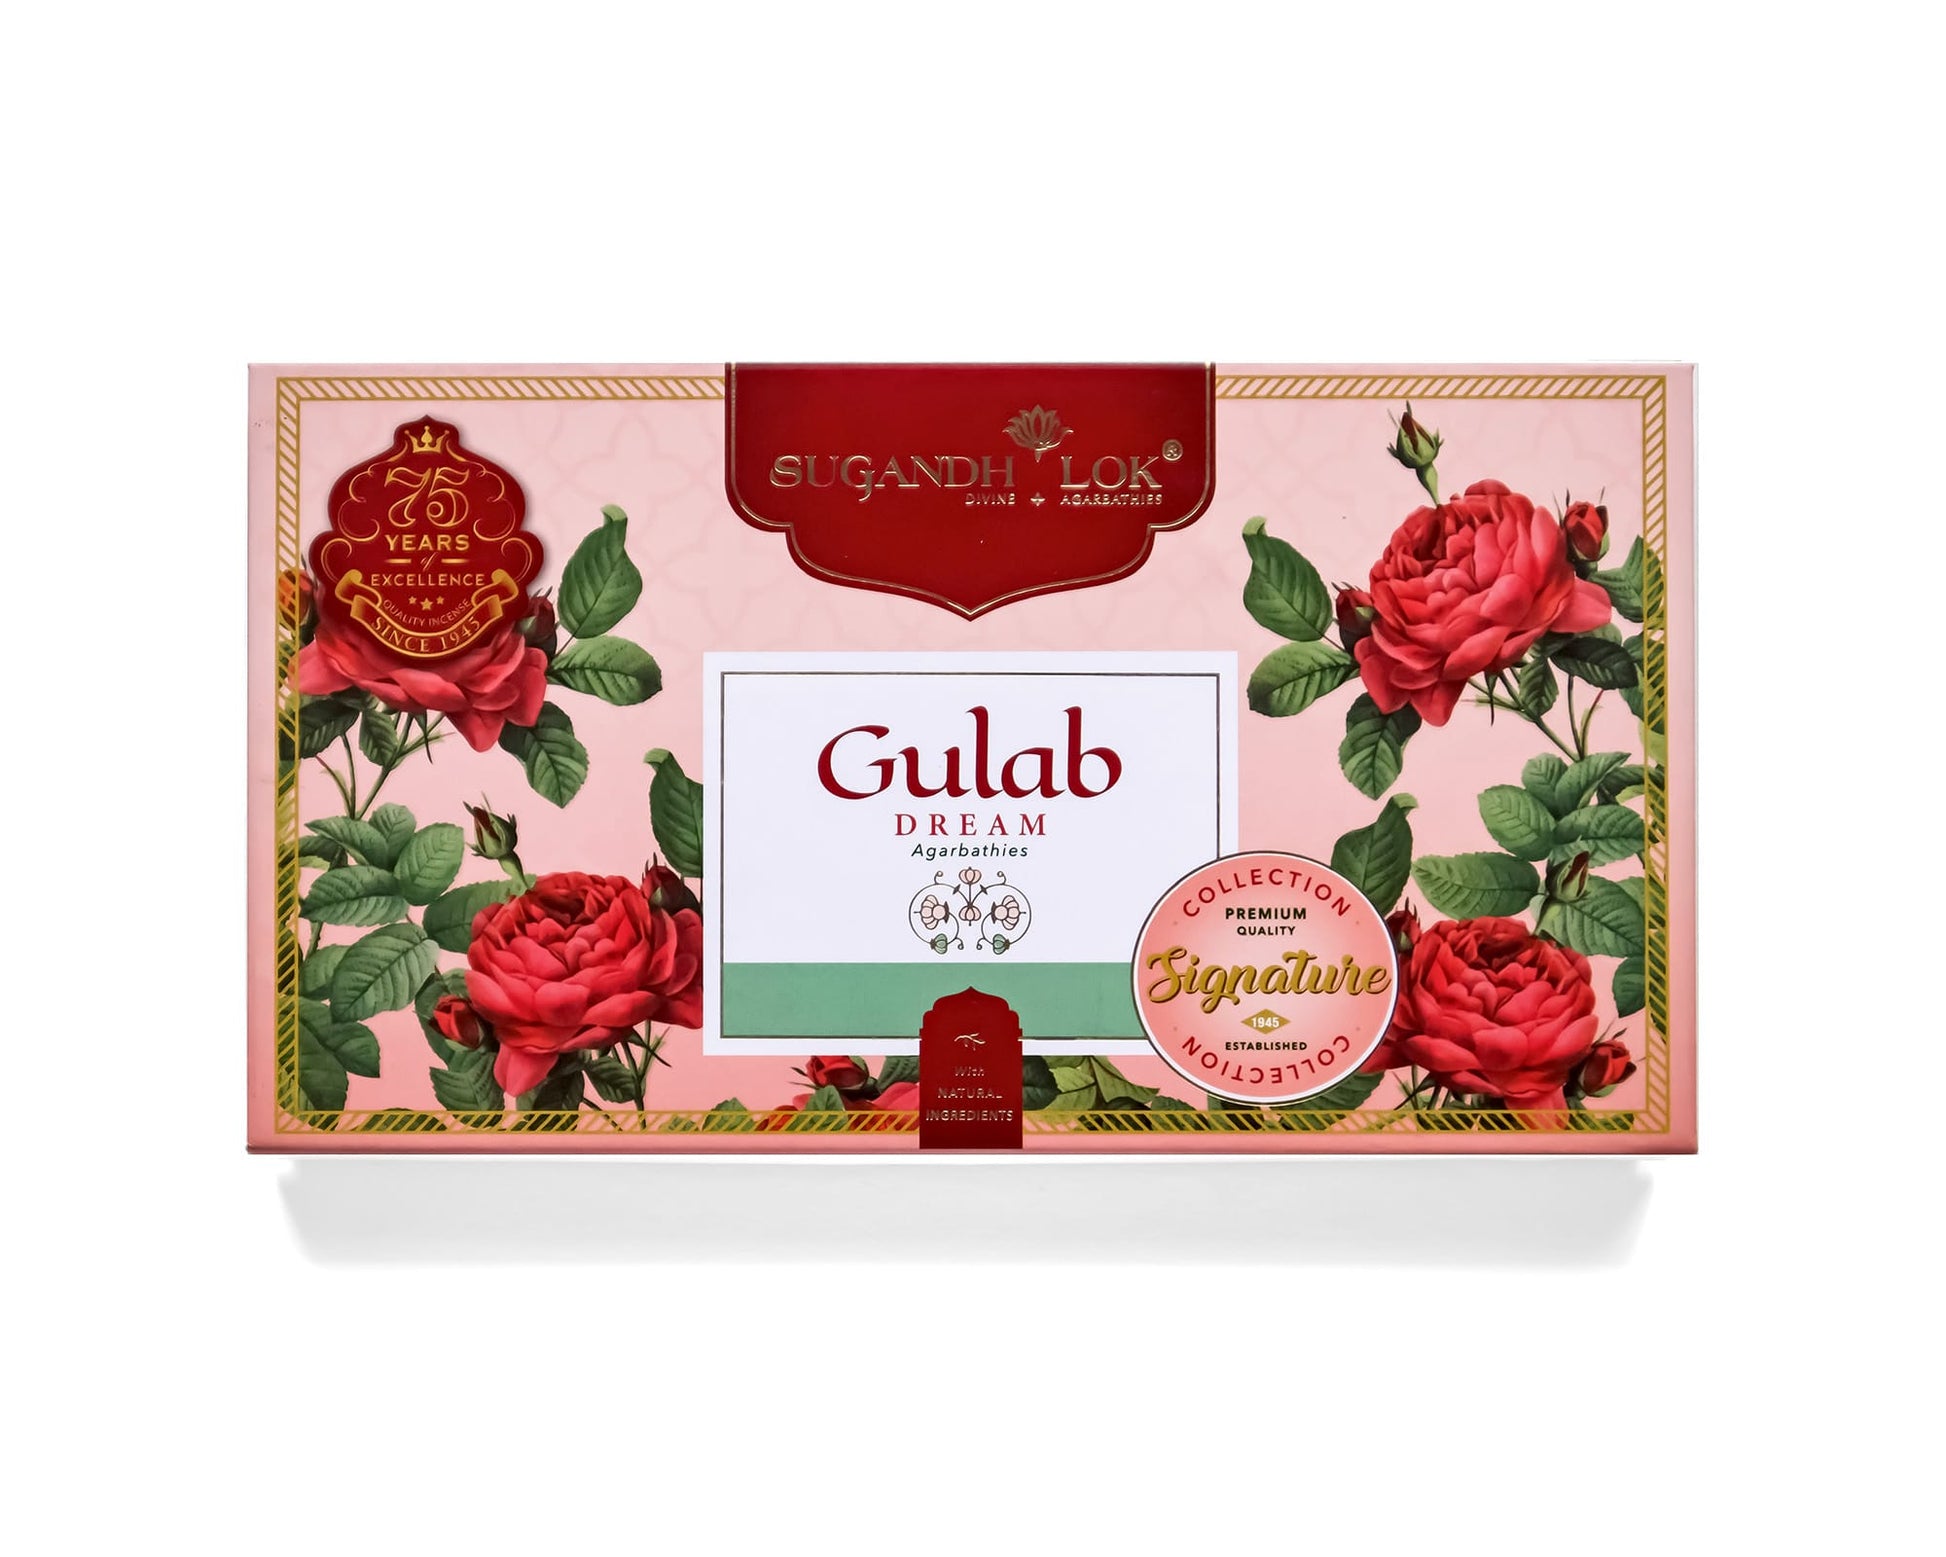 Gulab Dream Agarbatti Box by SugandhLok